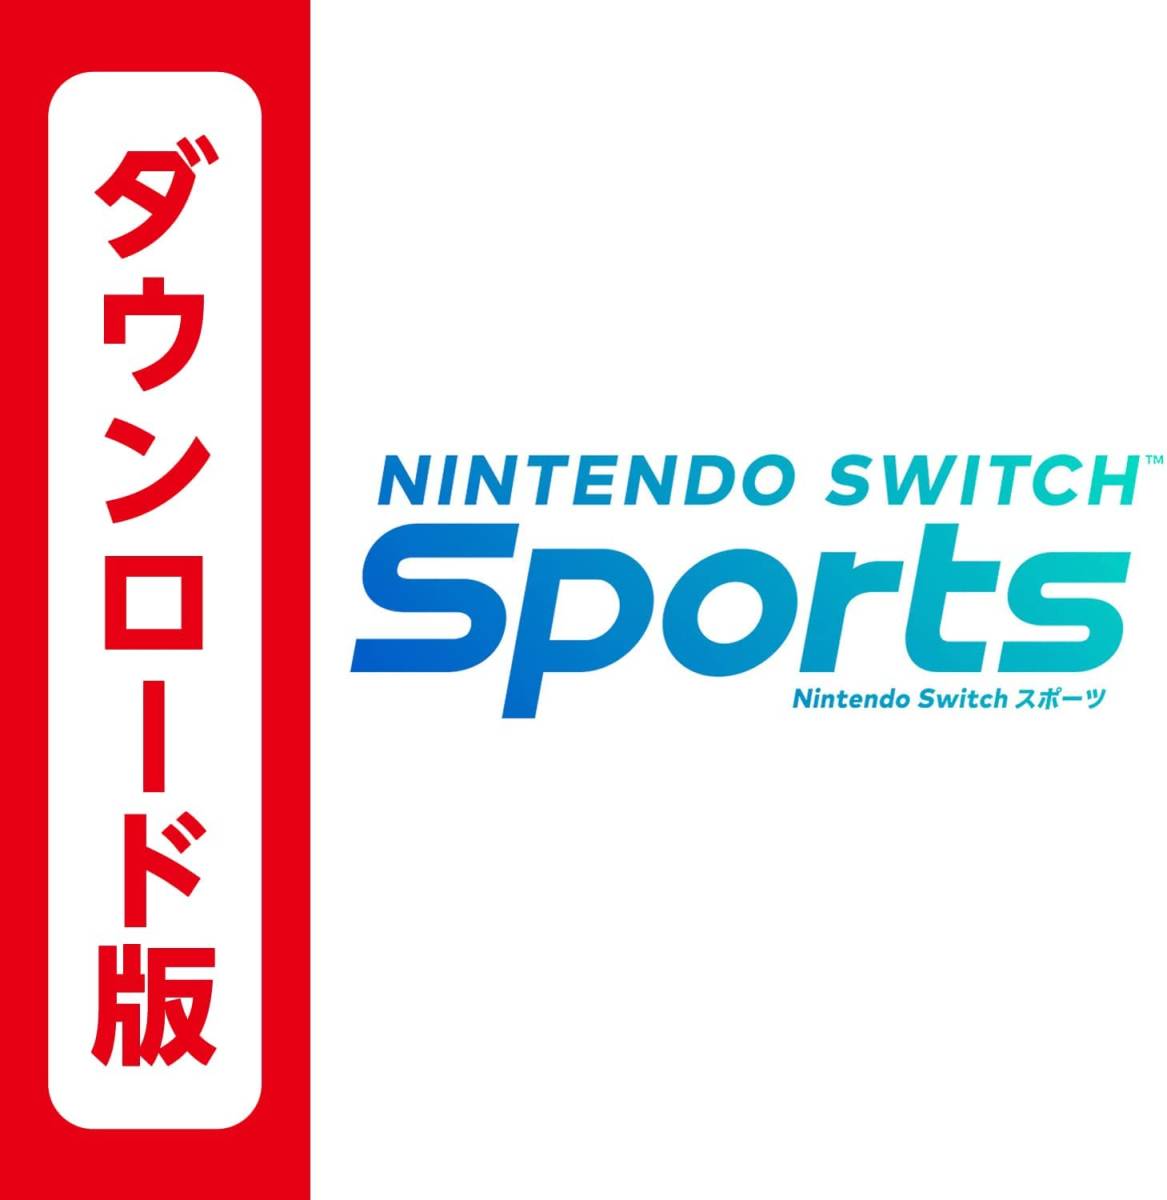 Nintendo Switch Sports ダウンロード版 ニンテンドースイッチスポーツ ニンテンドースイッチ スポーツ 任天堂 スイッチ